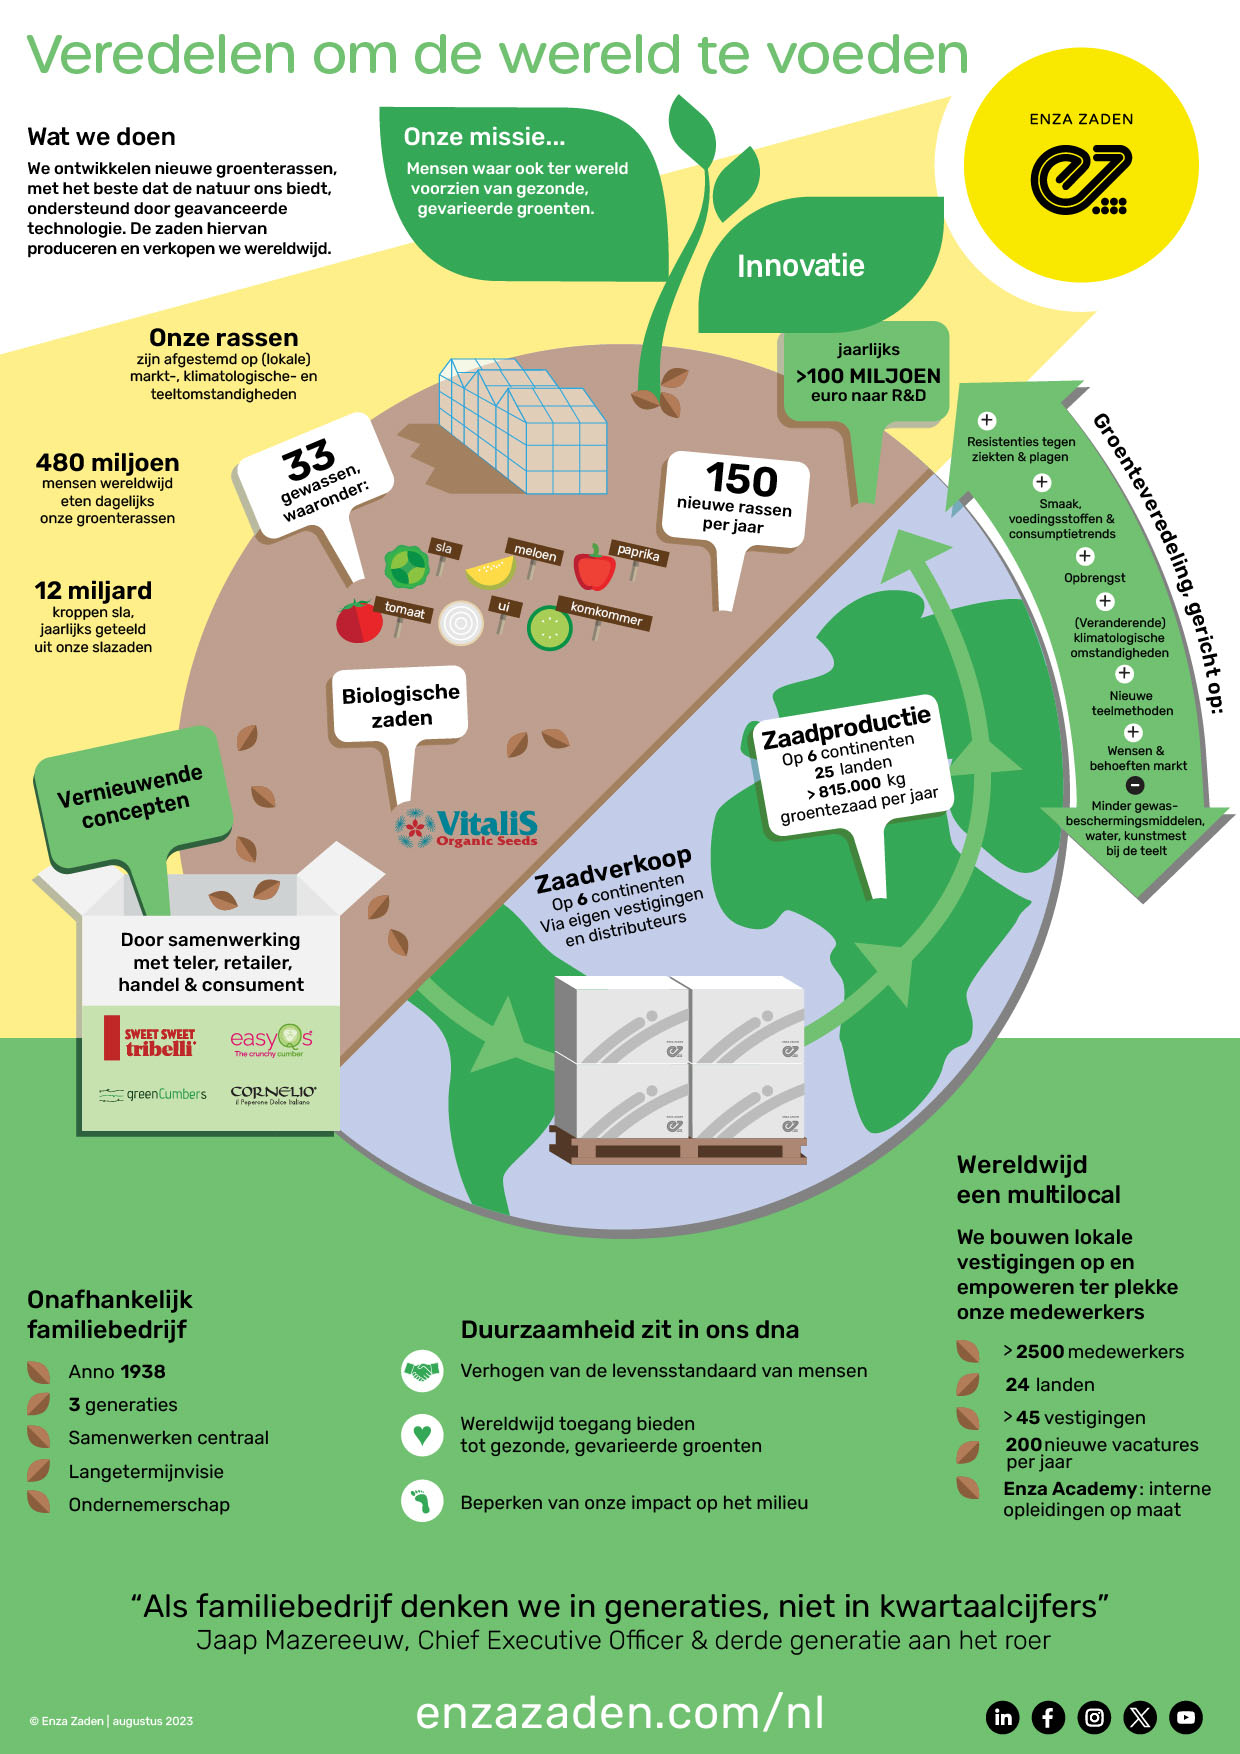 Infographic Enza Zaden - Wat we doen - Veredelen om de wereld te voeden